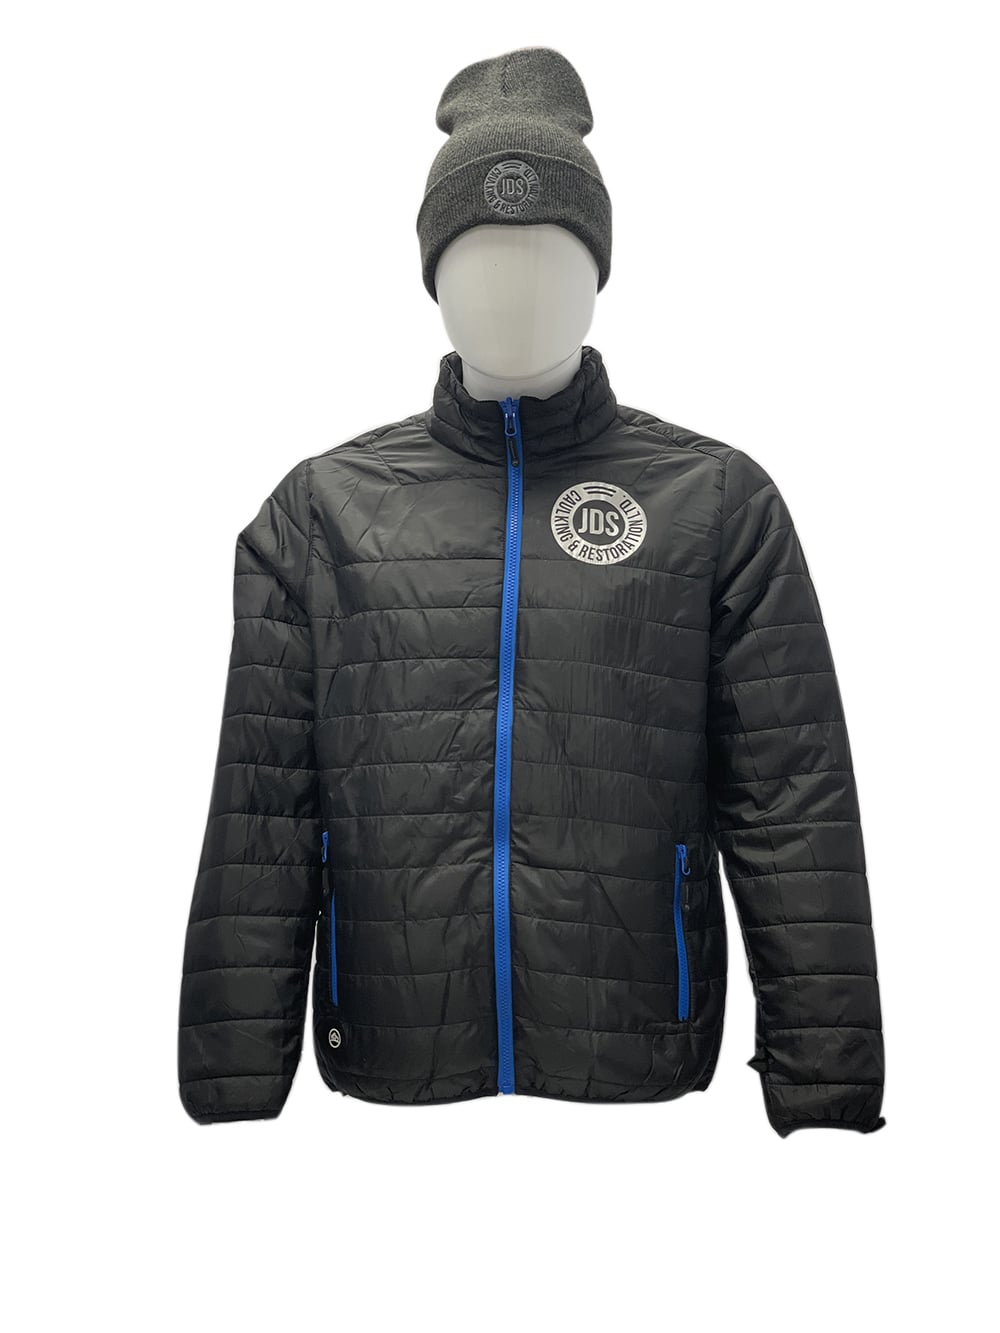 Best 3-in-1 Customized Winter Jacket for Men & Women – Workwear Toronto Inner Wear